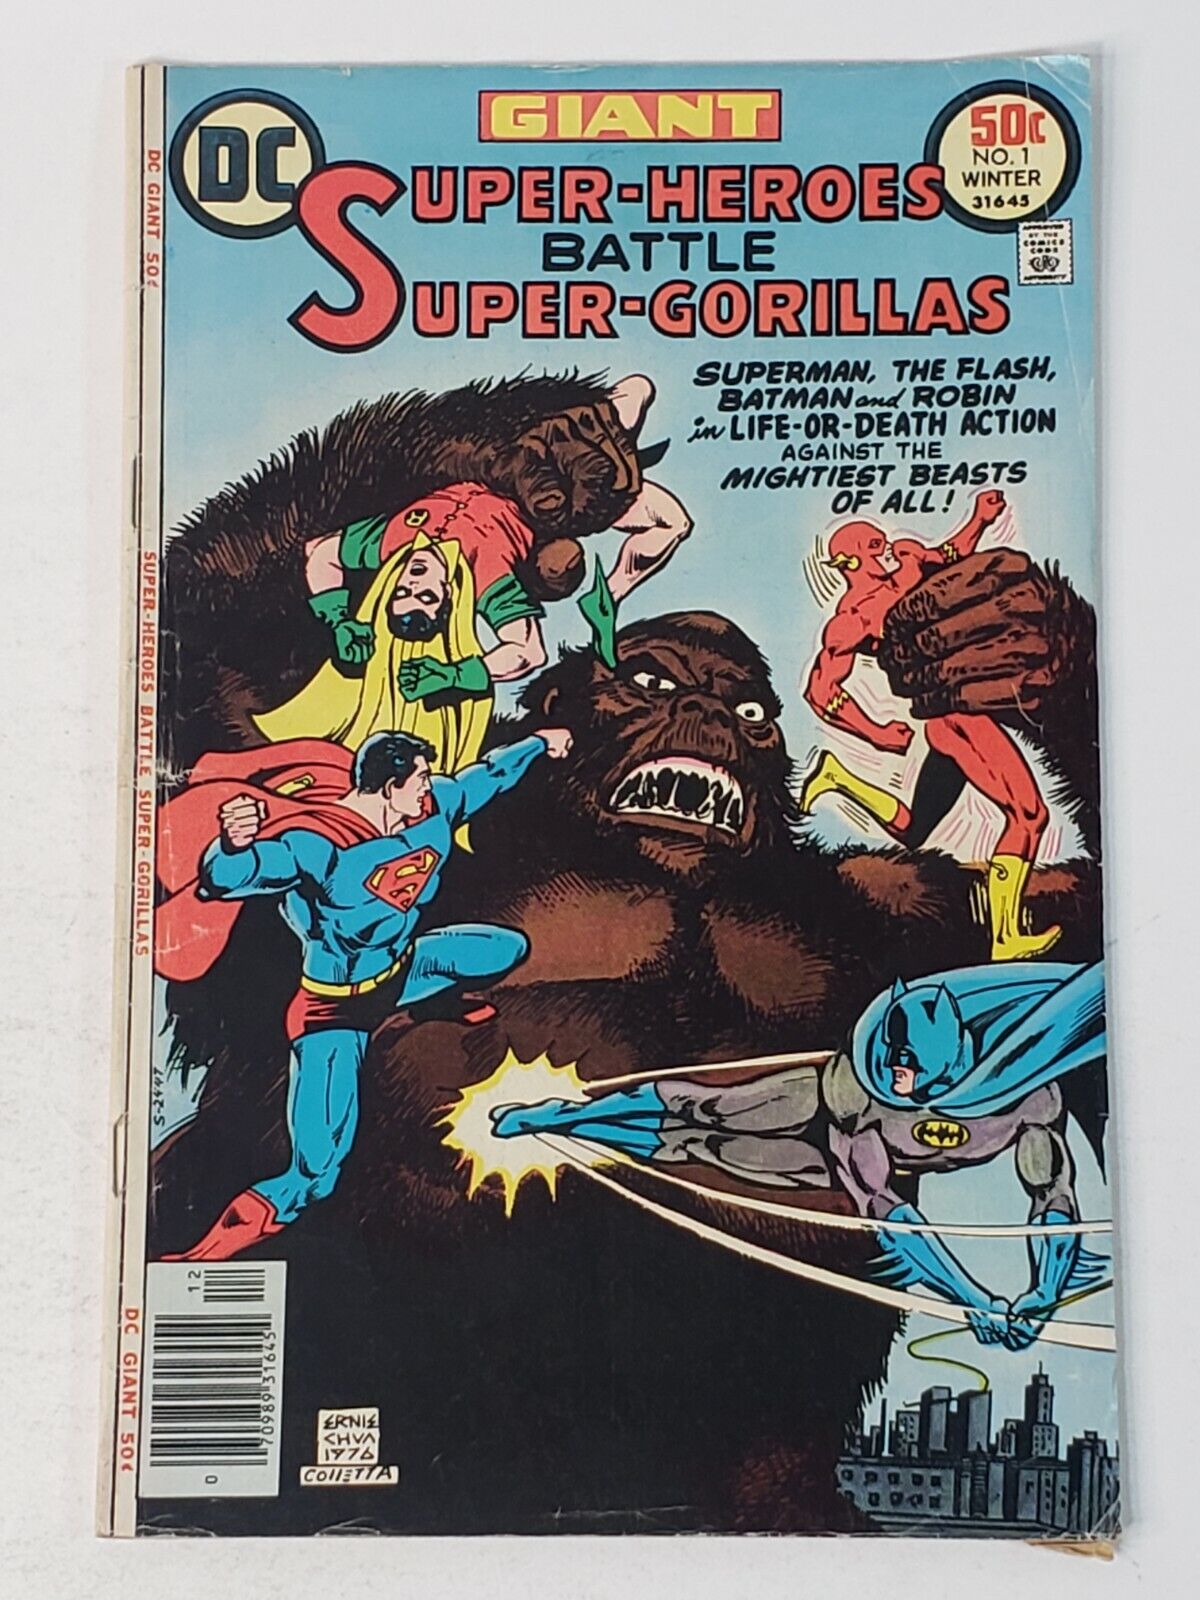 Super-Heroes Battle Super-Gorillas 1 Giant-Size DC Comics 50c Winter 1976